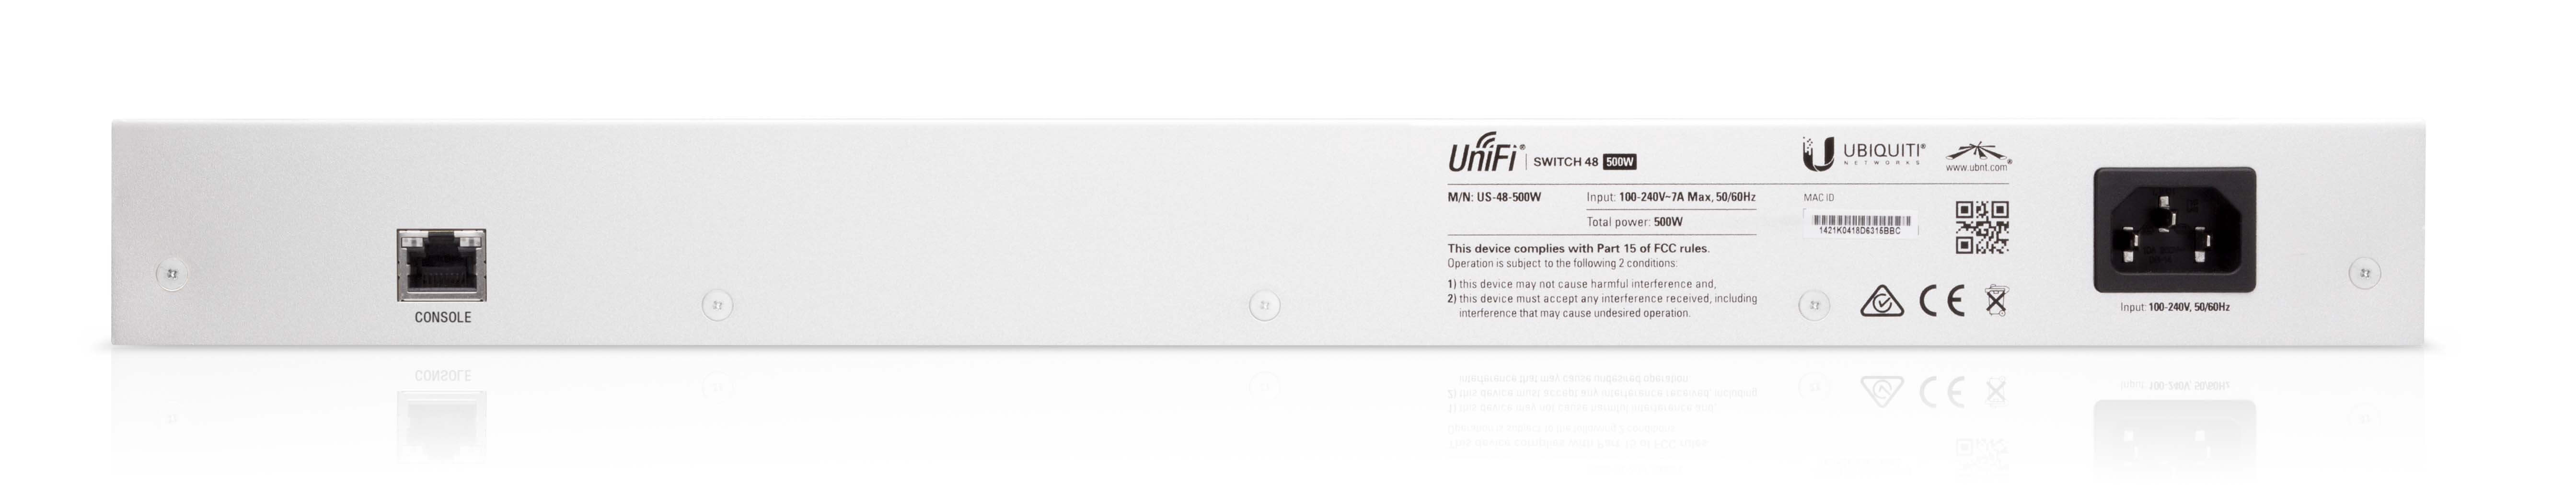 UBNT UniFi US-48-500W - UBNT UniFi Switch 48 Port 500W PoE+Management Switch